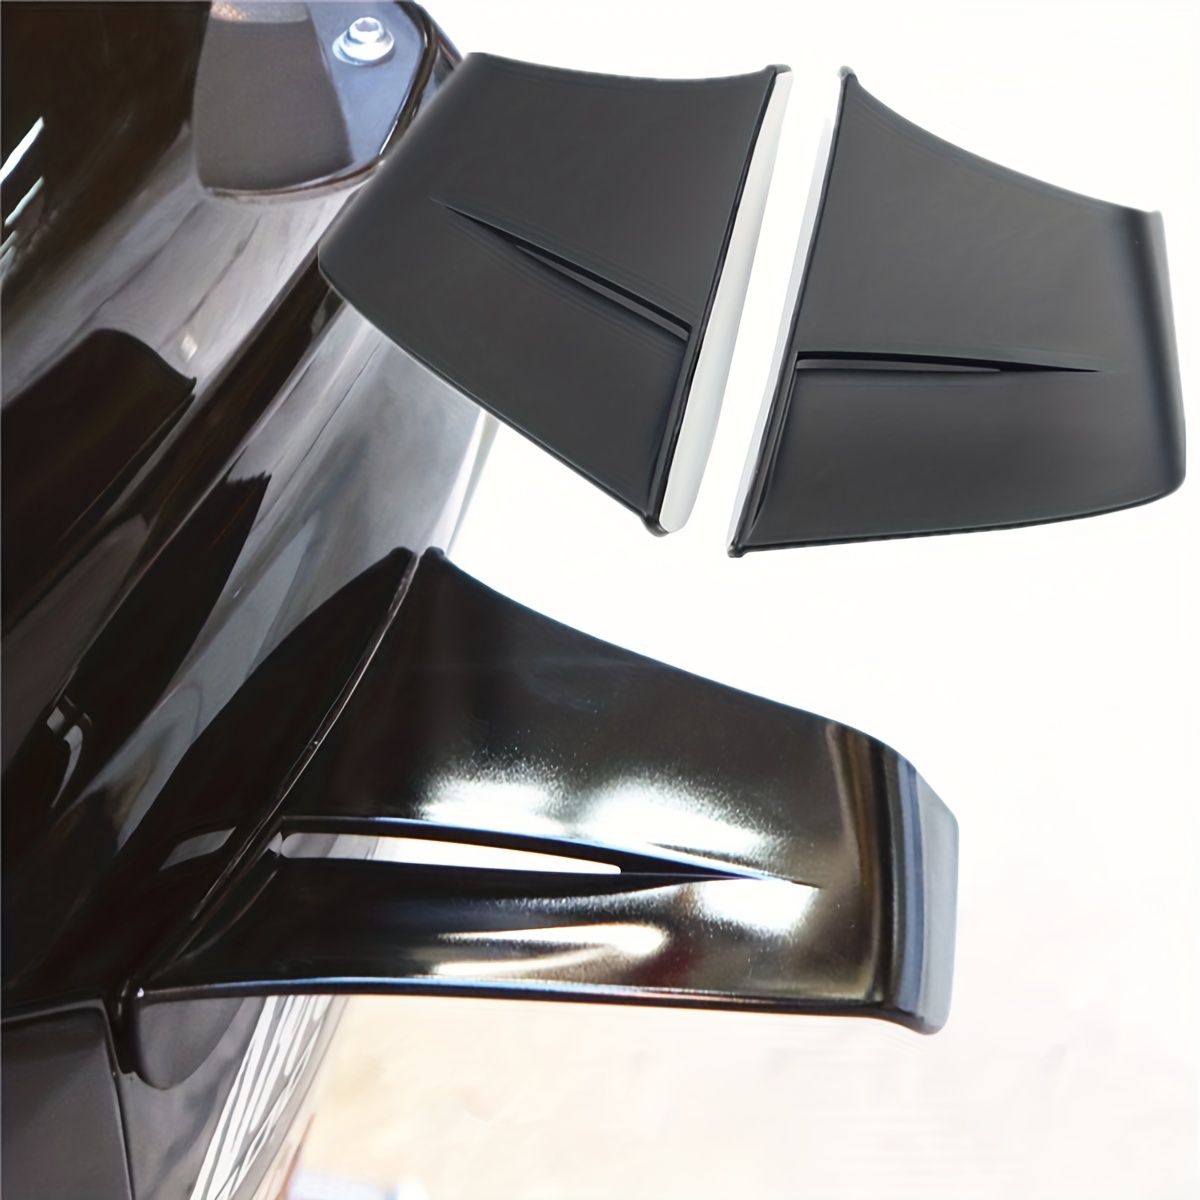  Kit d'aile aérodynamique universel for ailes de moto compatible  avec Ducati/Honda/Yamaha/Kawasaki 2Pcs / Set (Couleur : Black)